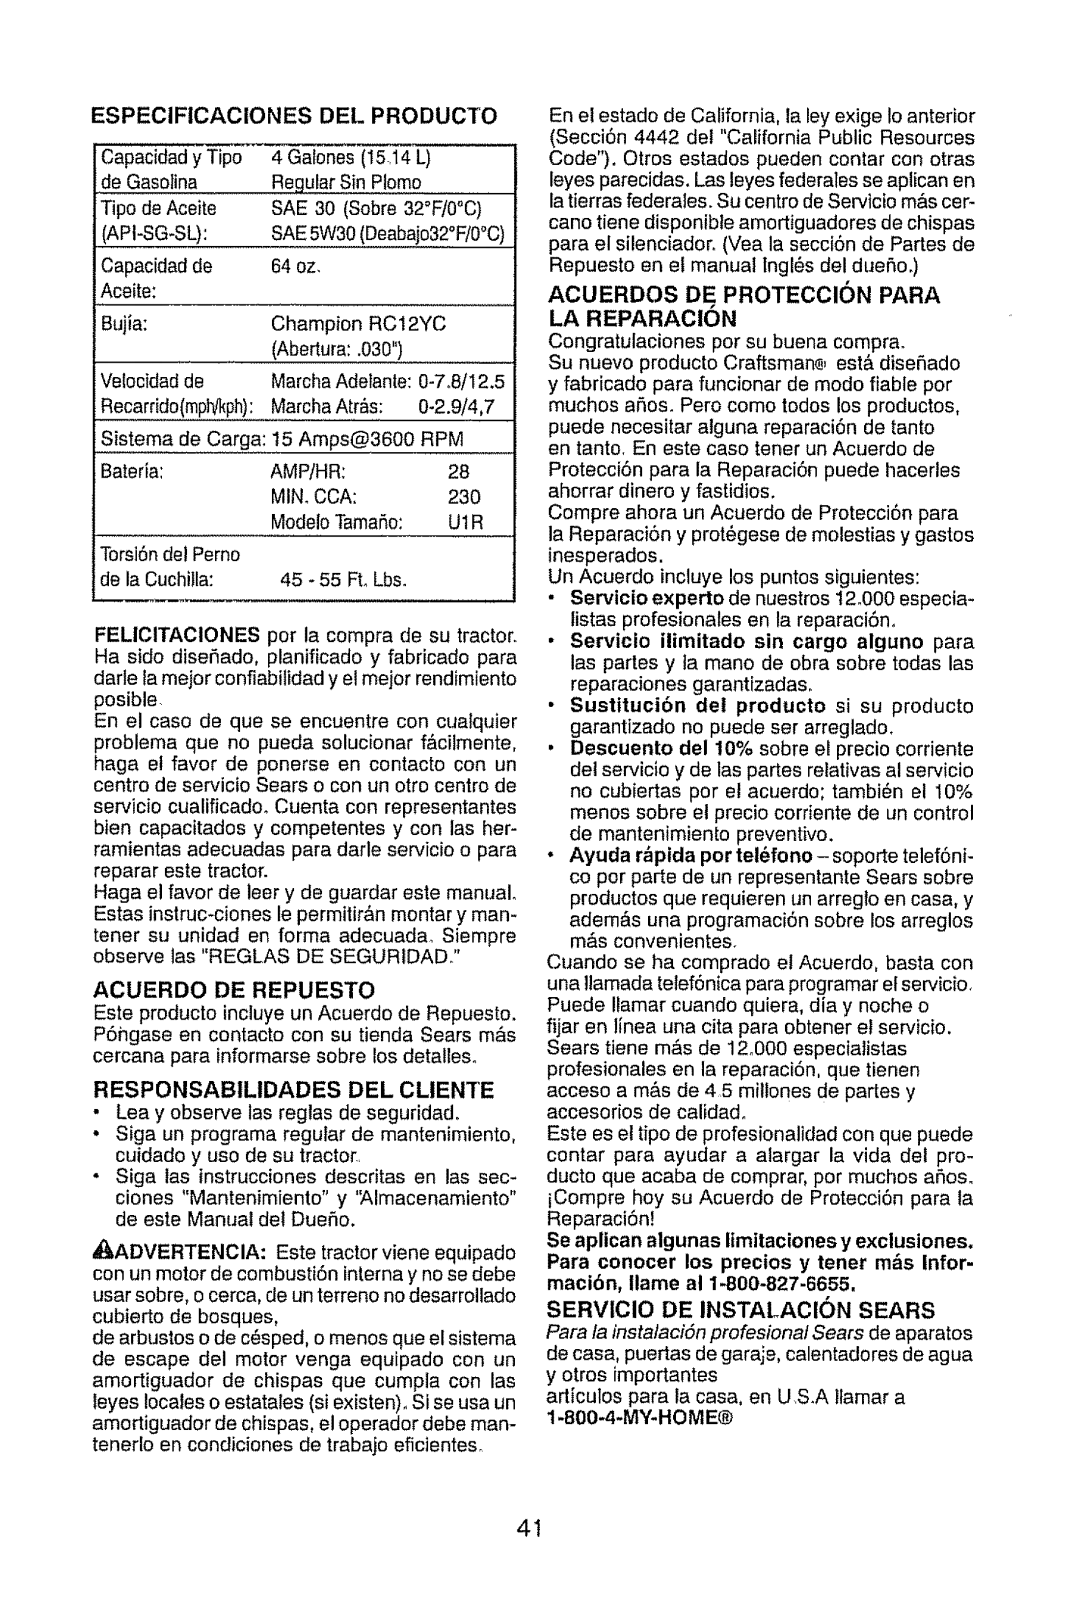 Craftsman 917.289470 manual Especificaciones Del Producto, RESPONSABtLIDADES DEL CLIENTE, My-Home 